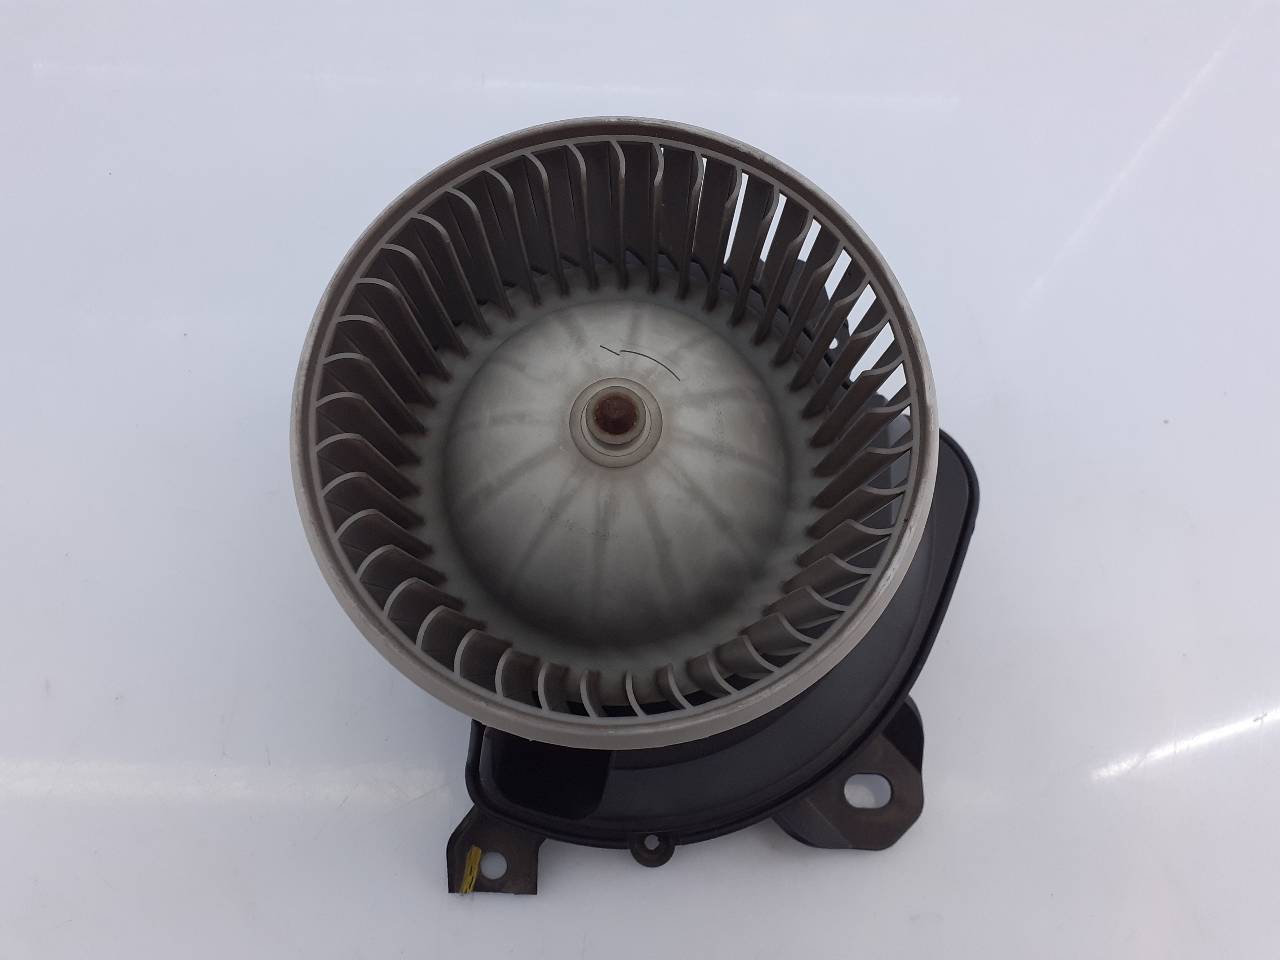 OPEL Corsa D (2006-2020) Heater Blower Fan 13335075, E3-A5-29-1 24485953